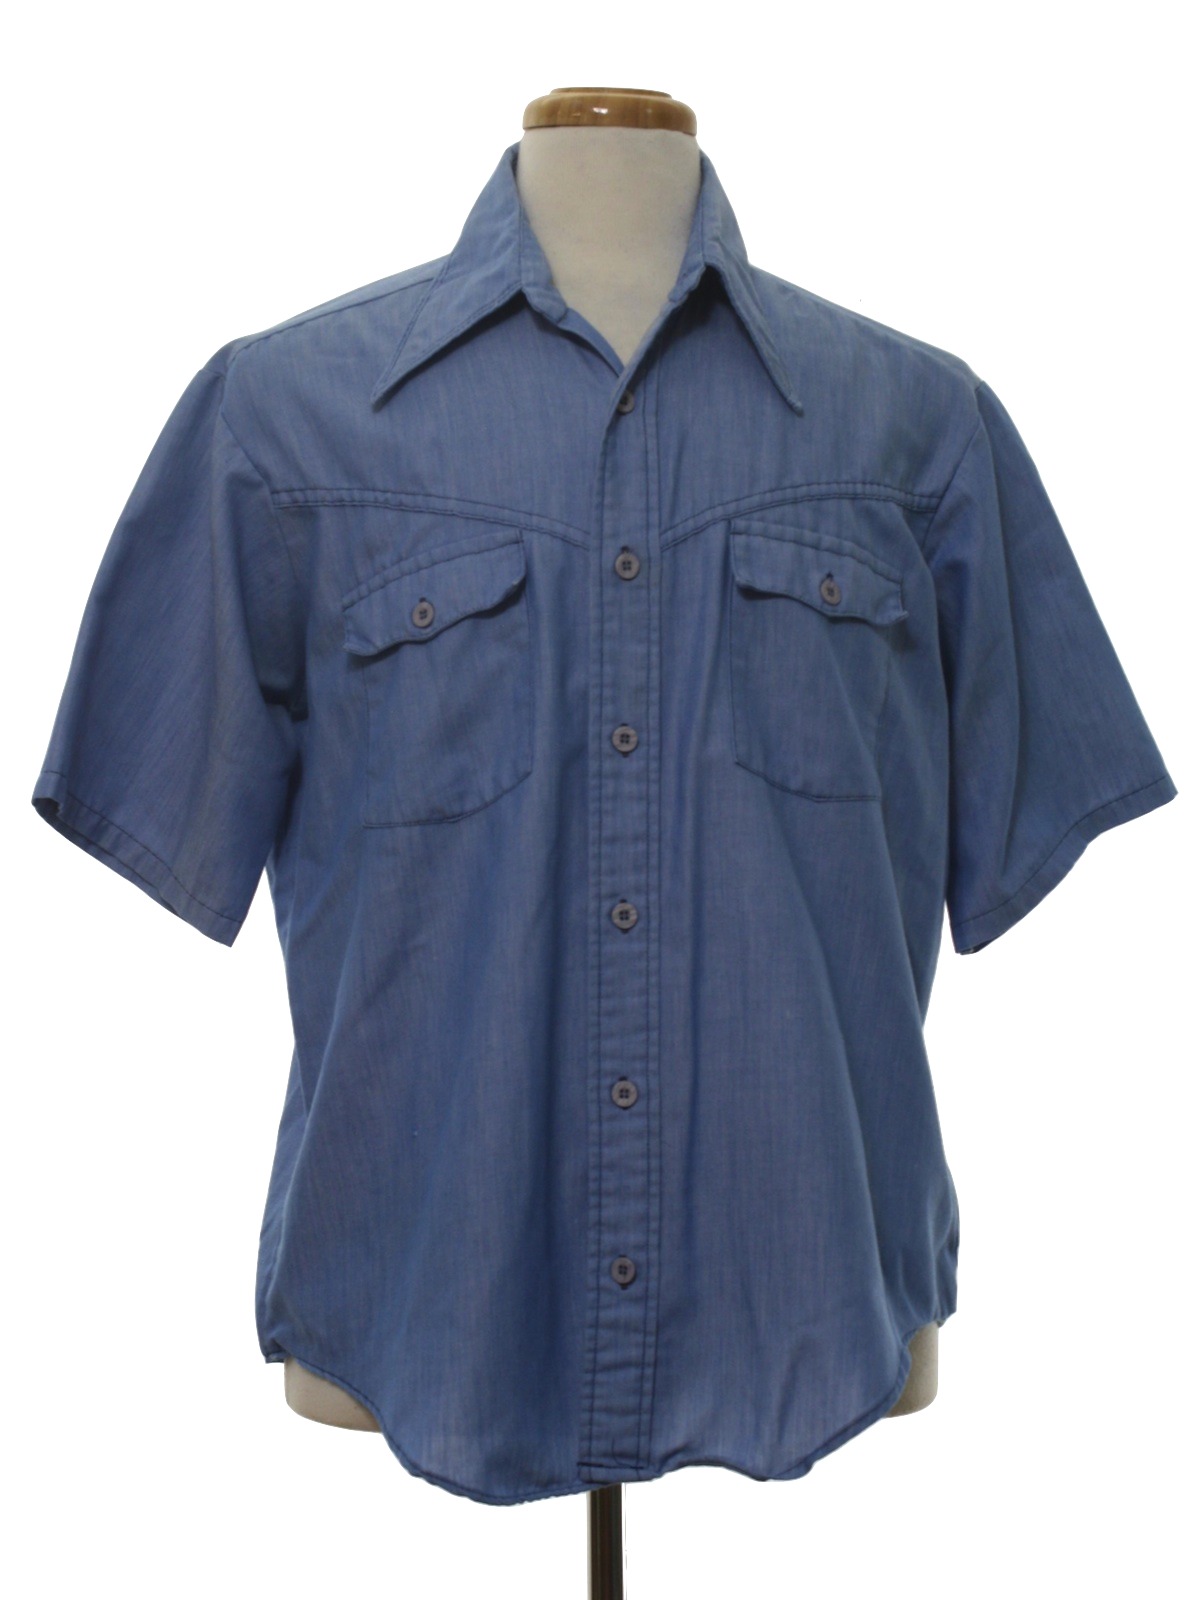 Retro 1970s Western Shirt: 70s -Dude- Mens light blue background ...